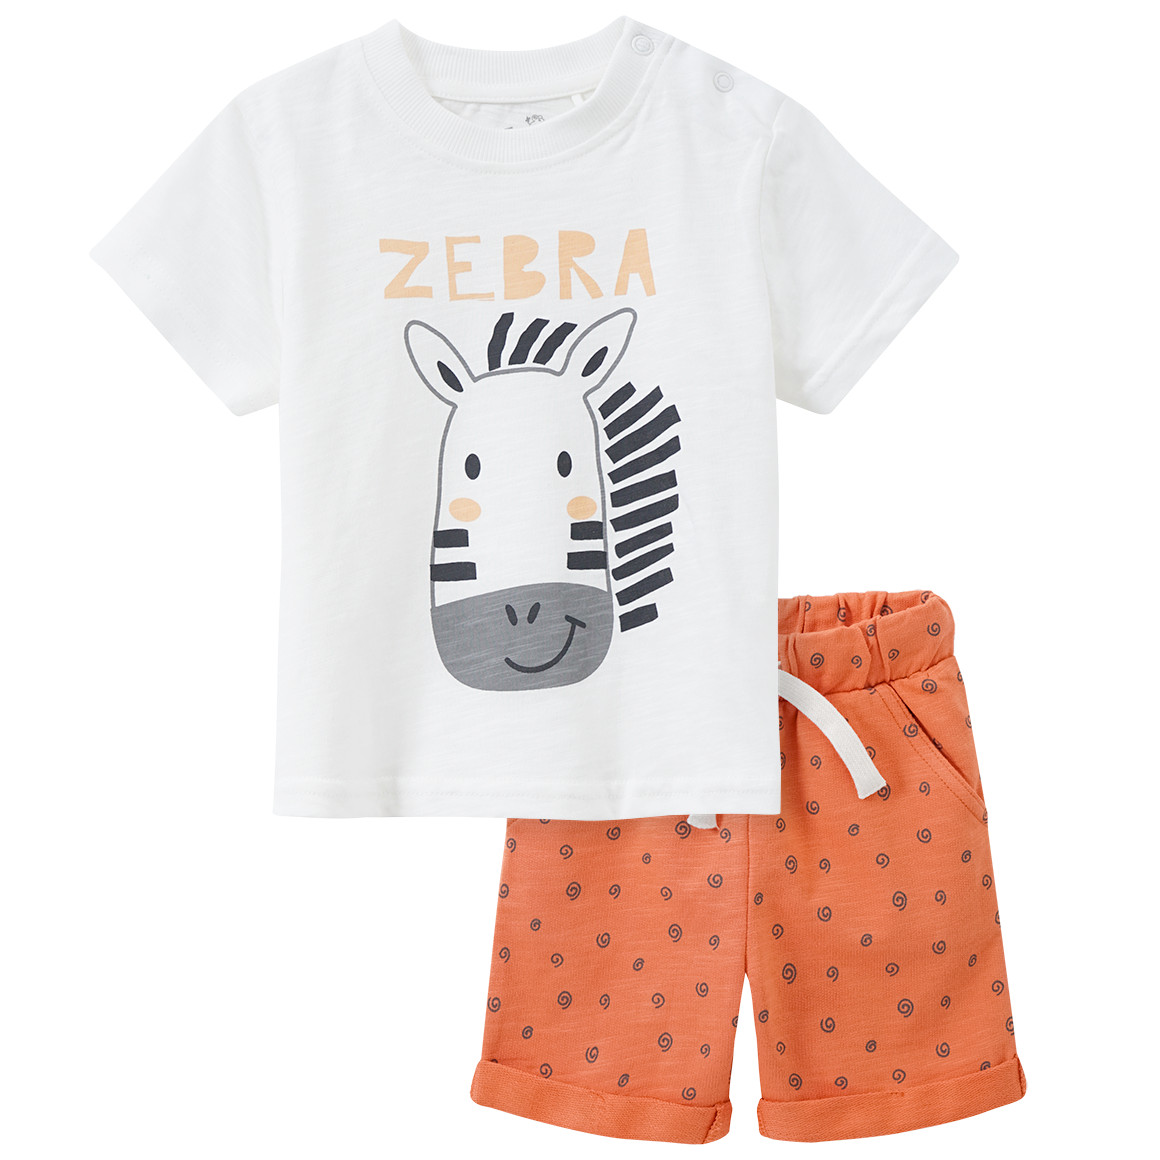 Baby T-Shirt und Shorts mit tierischem Motiv von Topomini